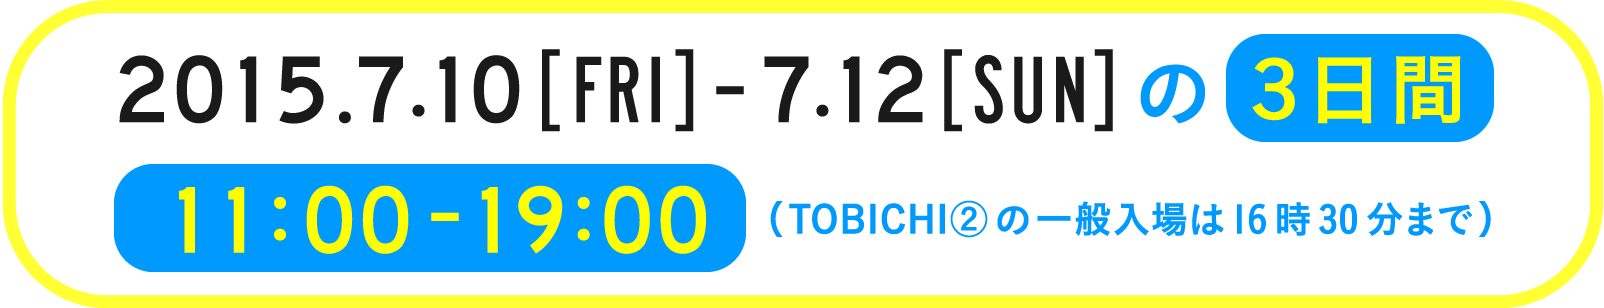 2015 7/10 FRI - 12 SUNの３日間 11:00-19:00（TOBICHI②の一般入場は16時30分まで）